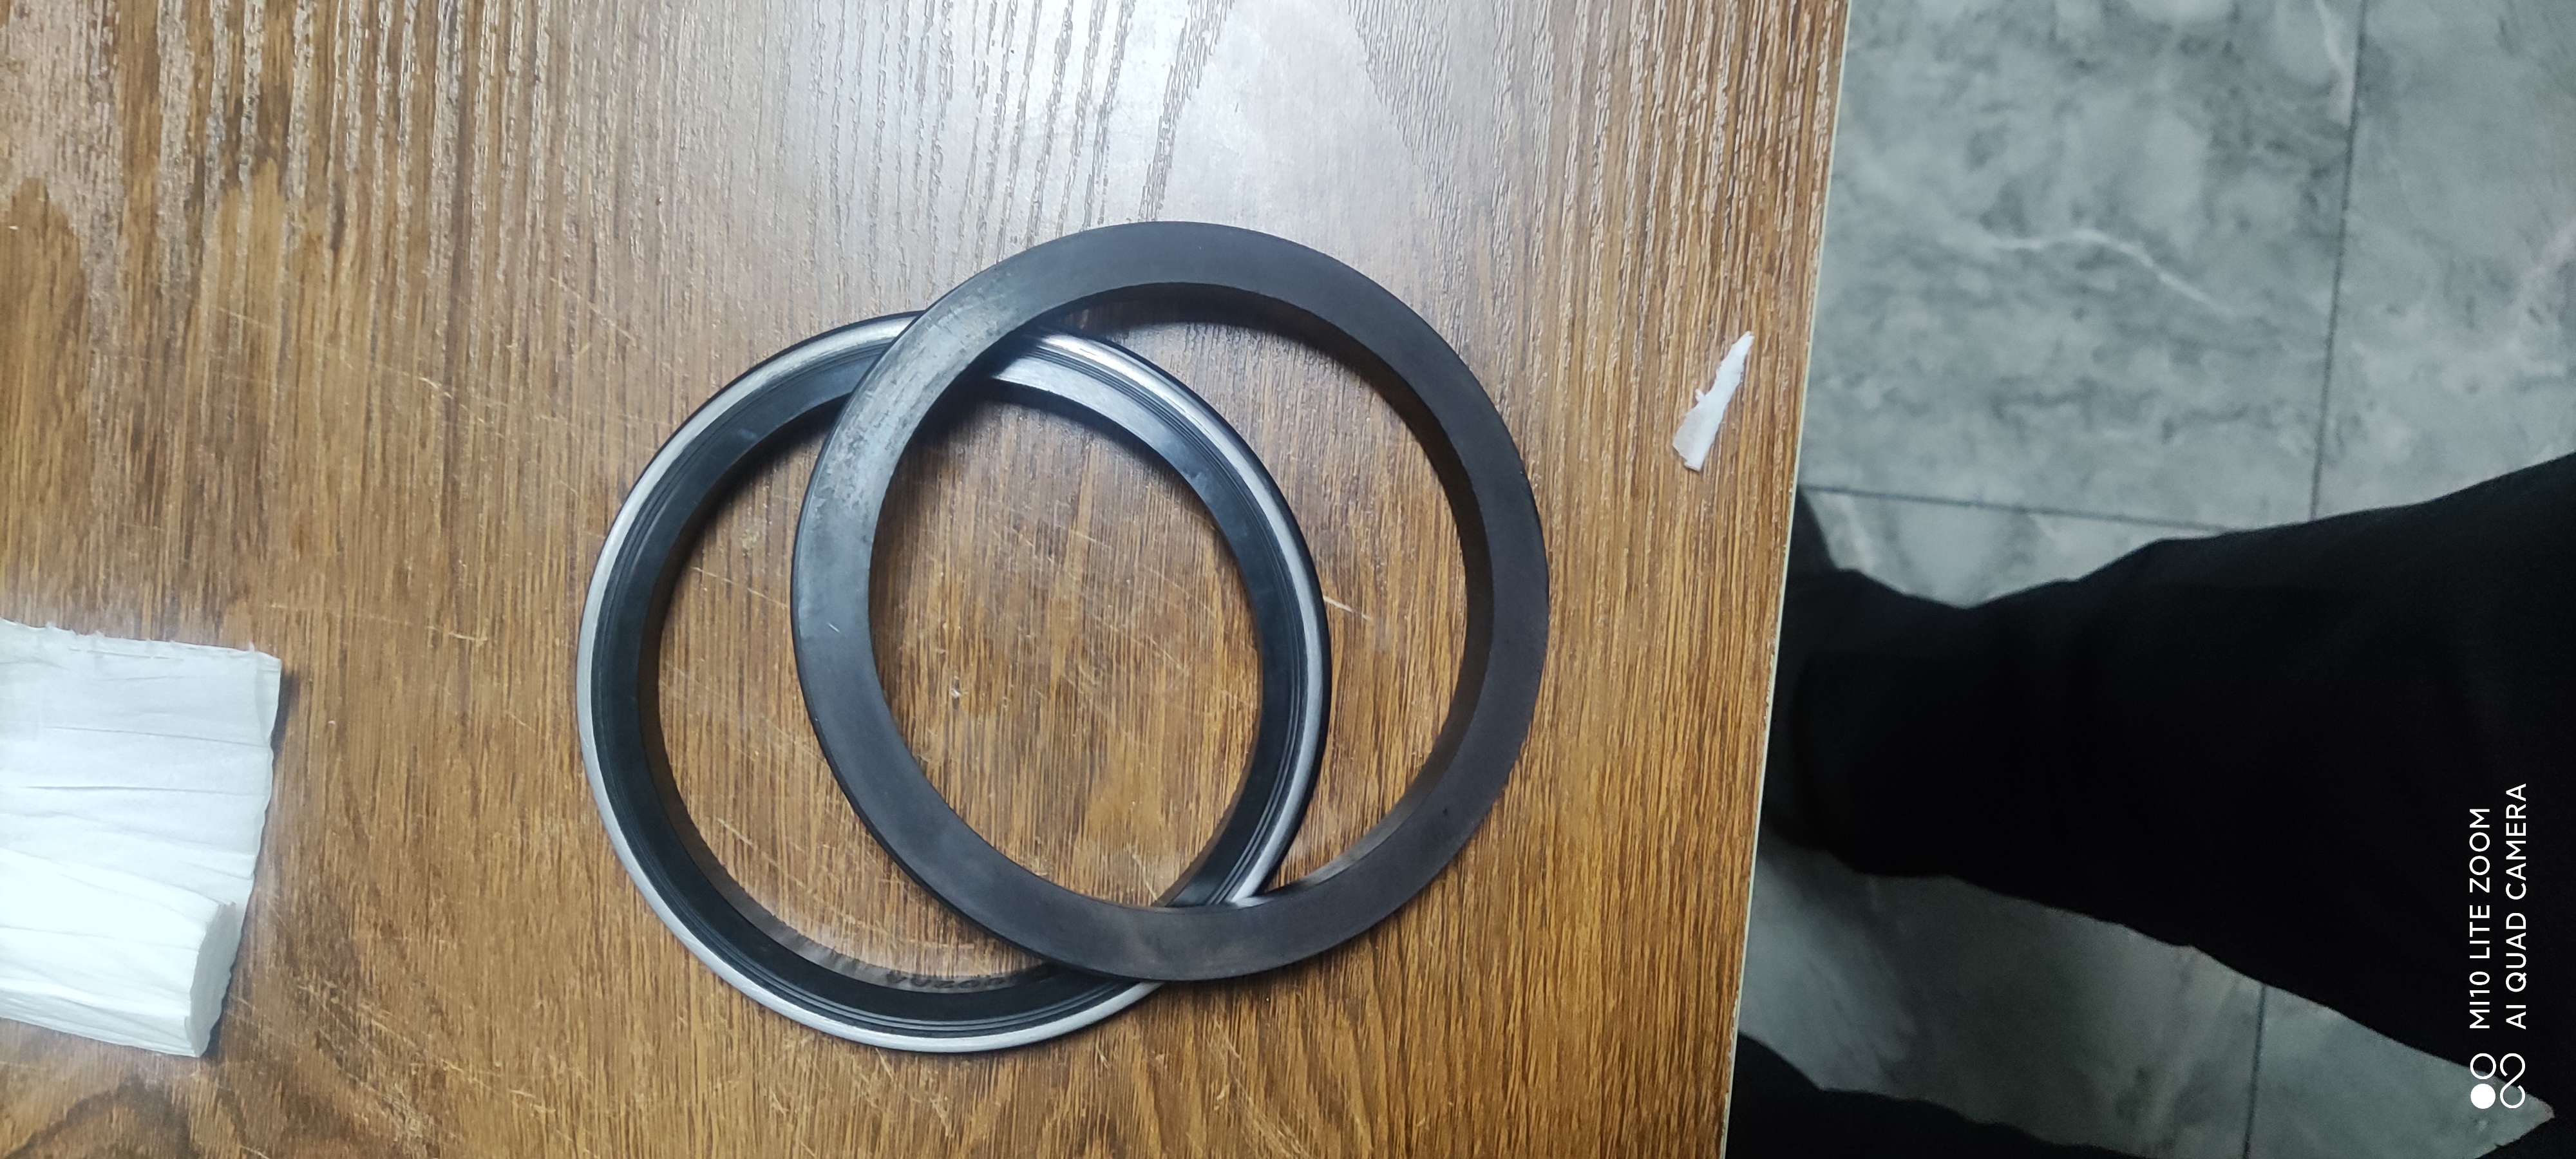 anel de vedação para articulação giratória